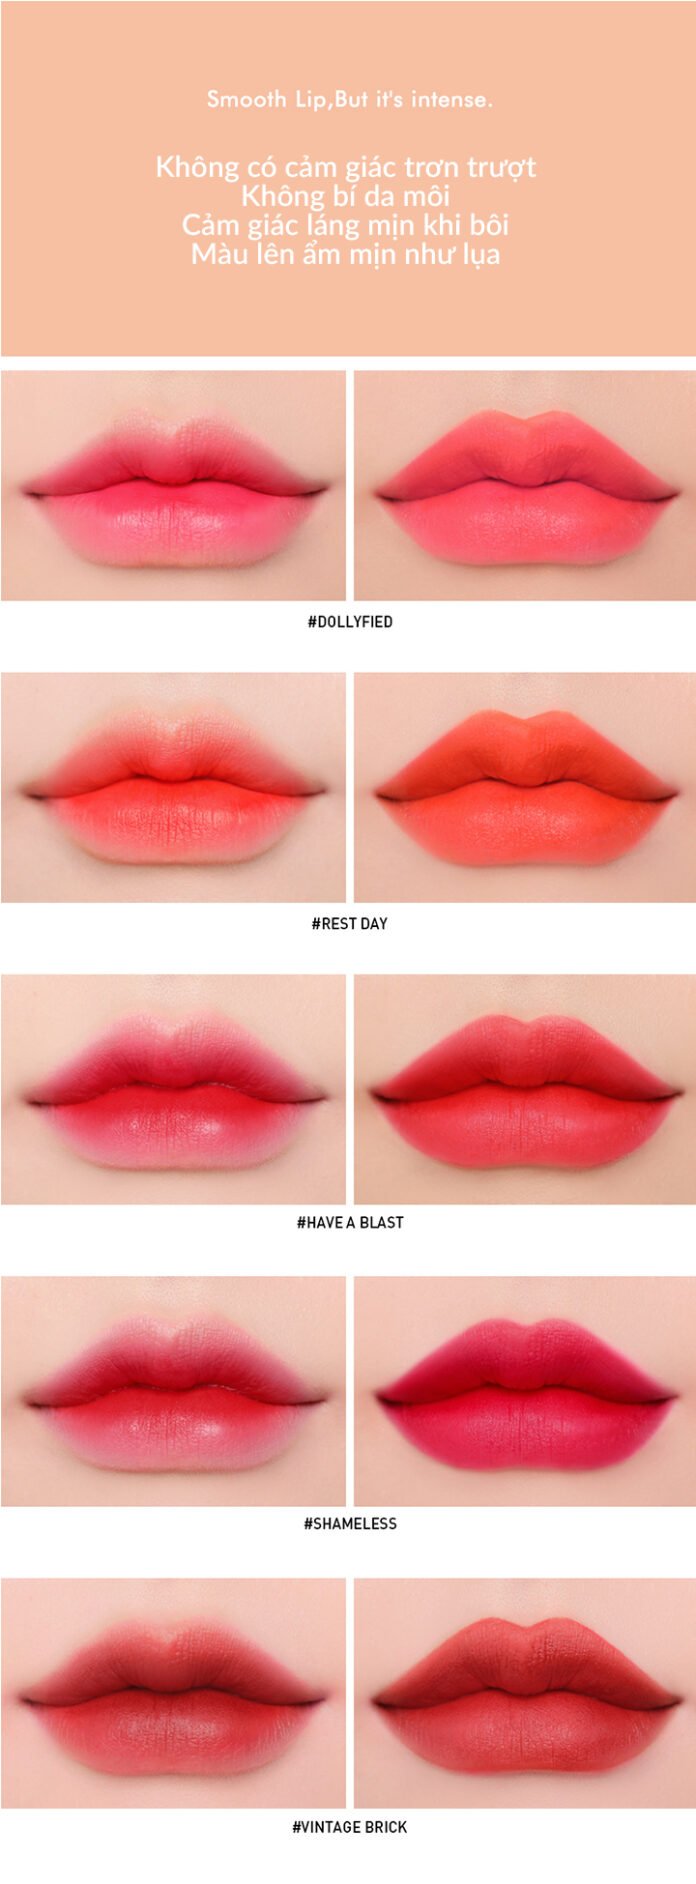 Bảng màu son 3CE Smoothing Lip Tint có các tông màu đảm bảo phù hợp sở thích của các nàng (nguồn: Internet)